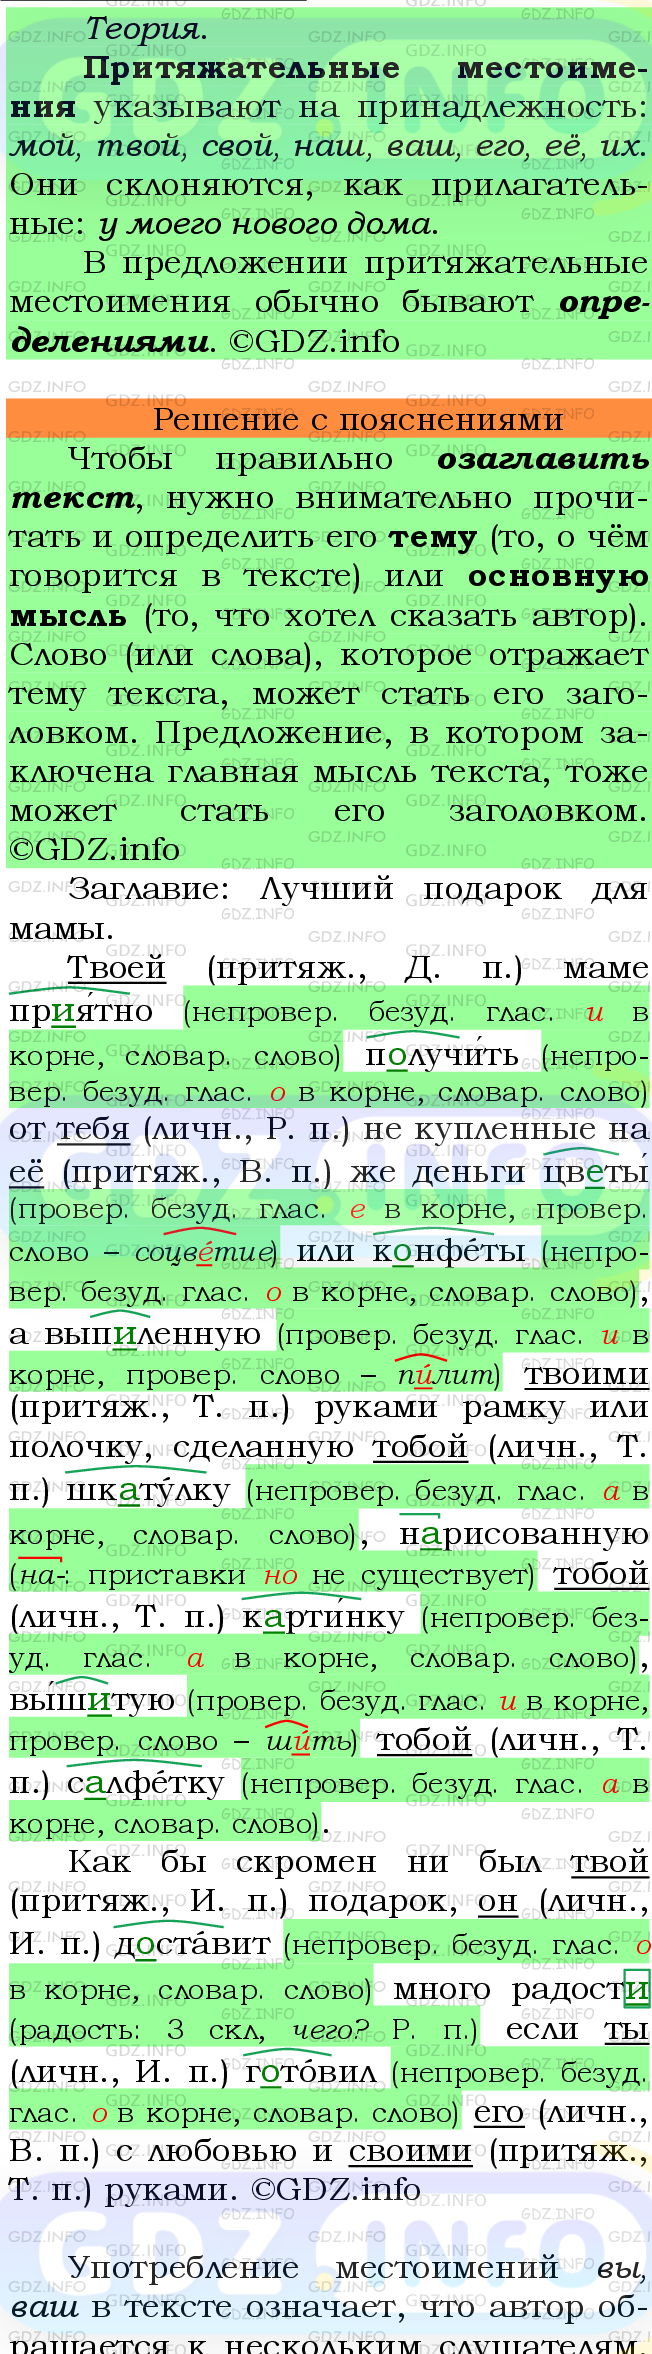 Фото подробного решения: Номер №596 из ГДЗ по Русскому языку 6 класс: Ладыженская Т.А.